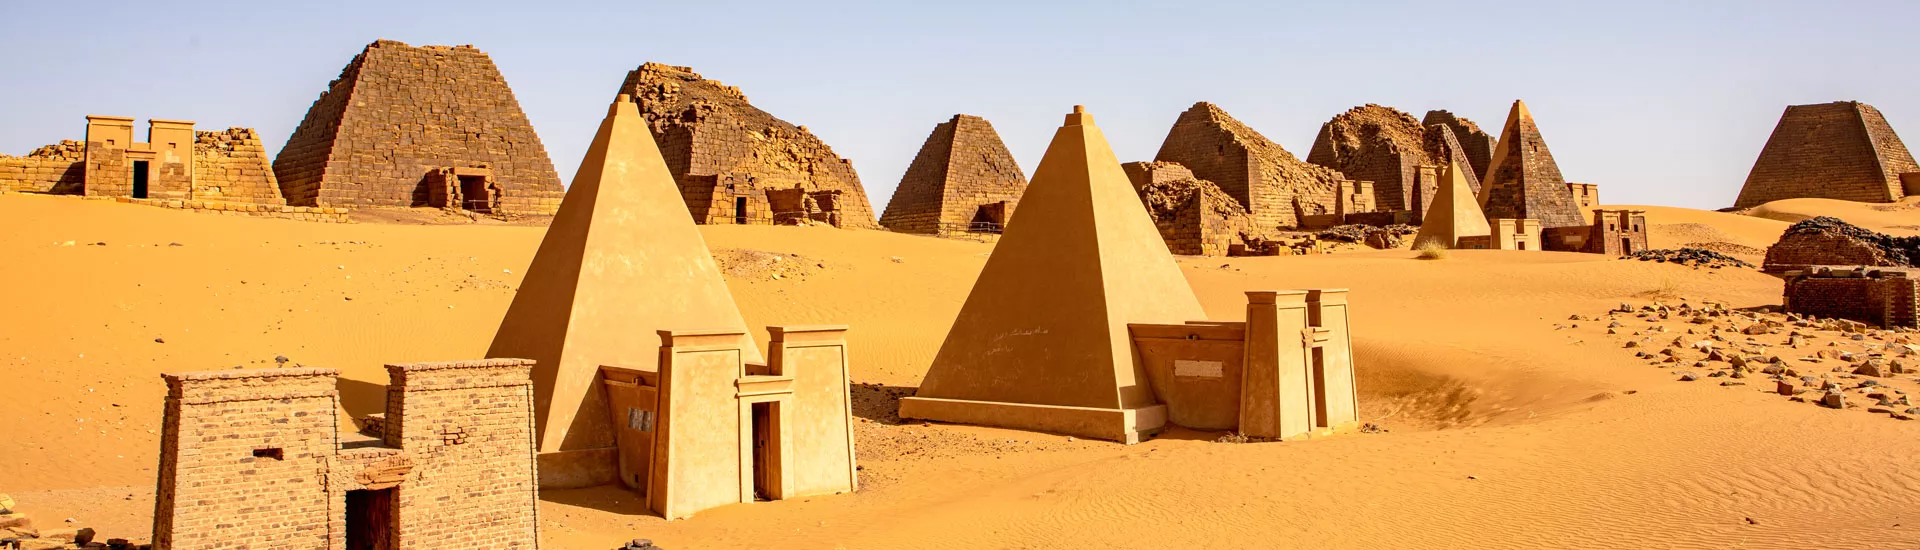 Pyramiden von Meroe nördlich von Khartum